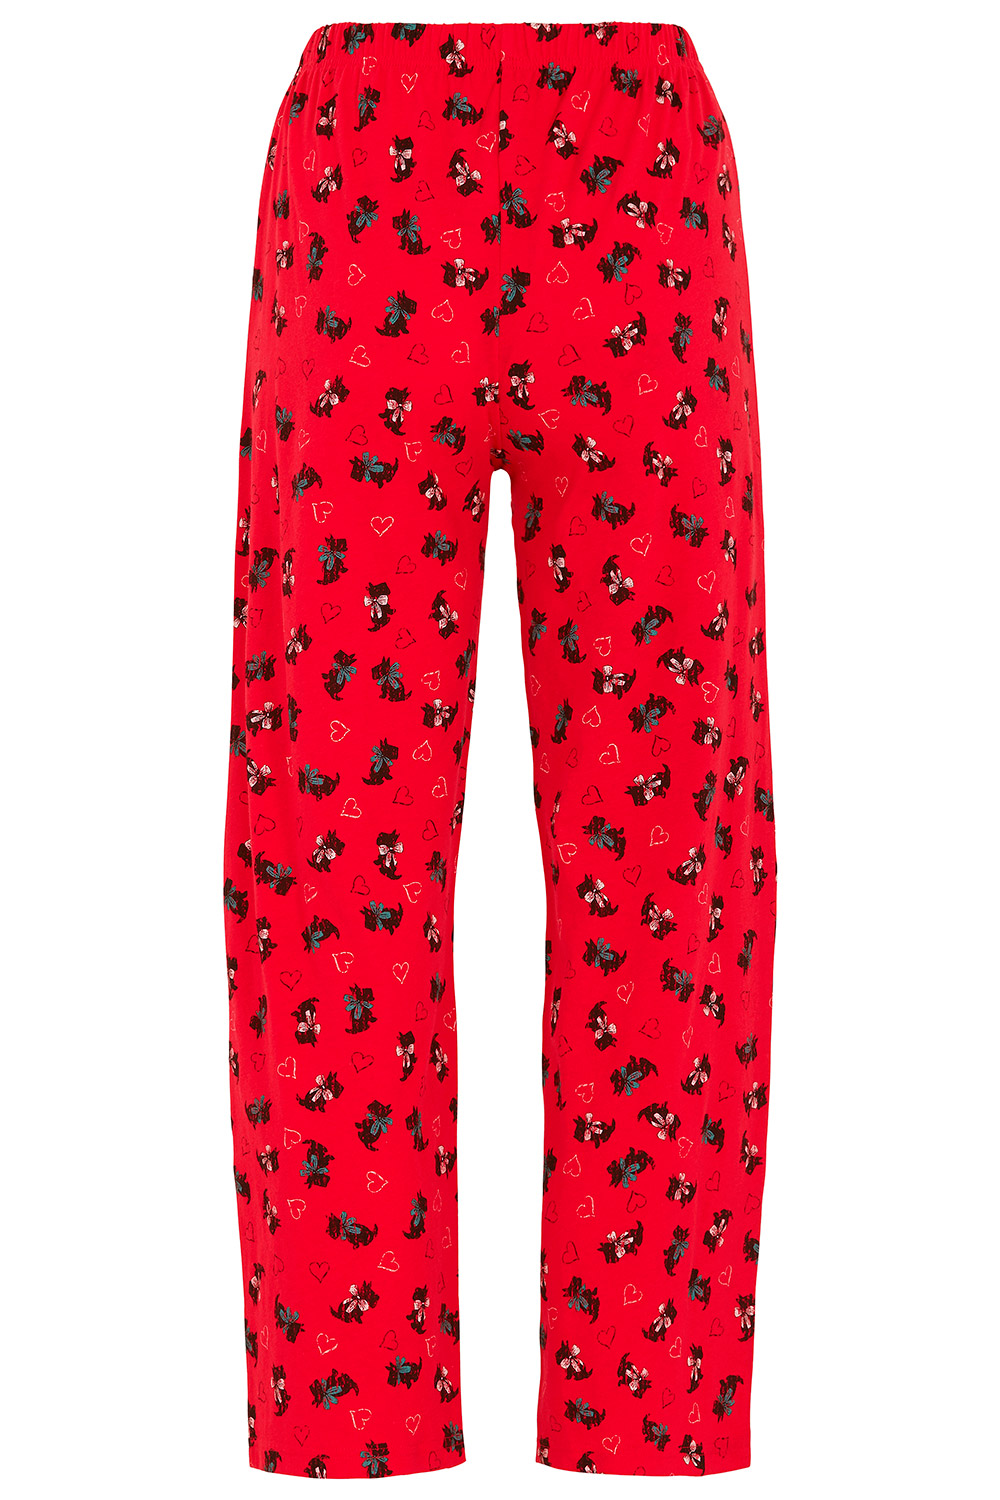 Scotty Dog Pyjamas